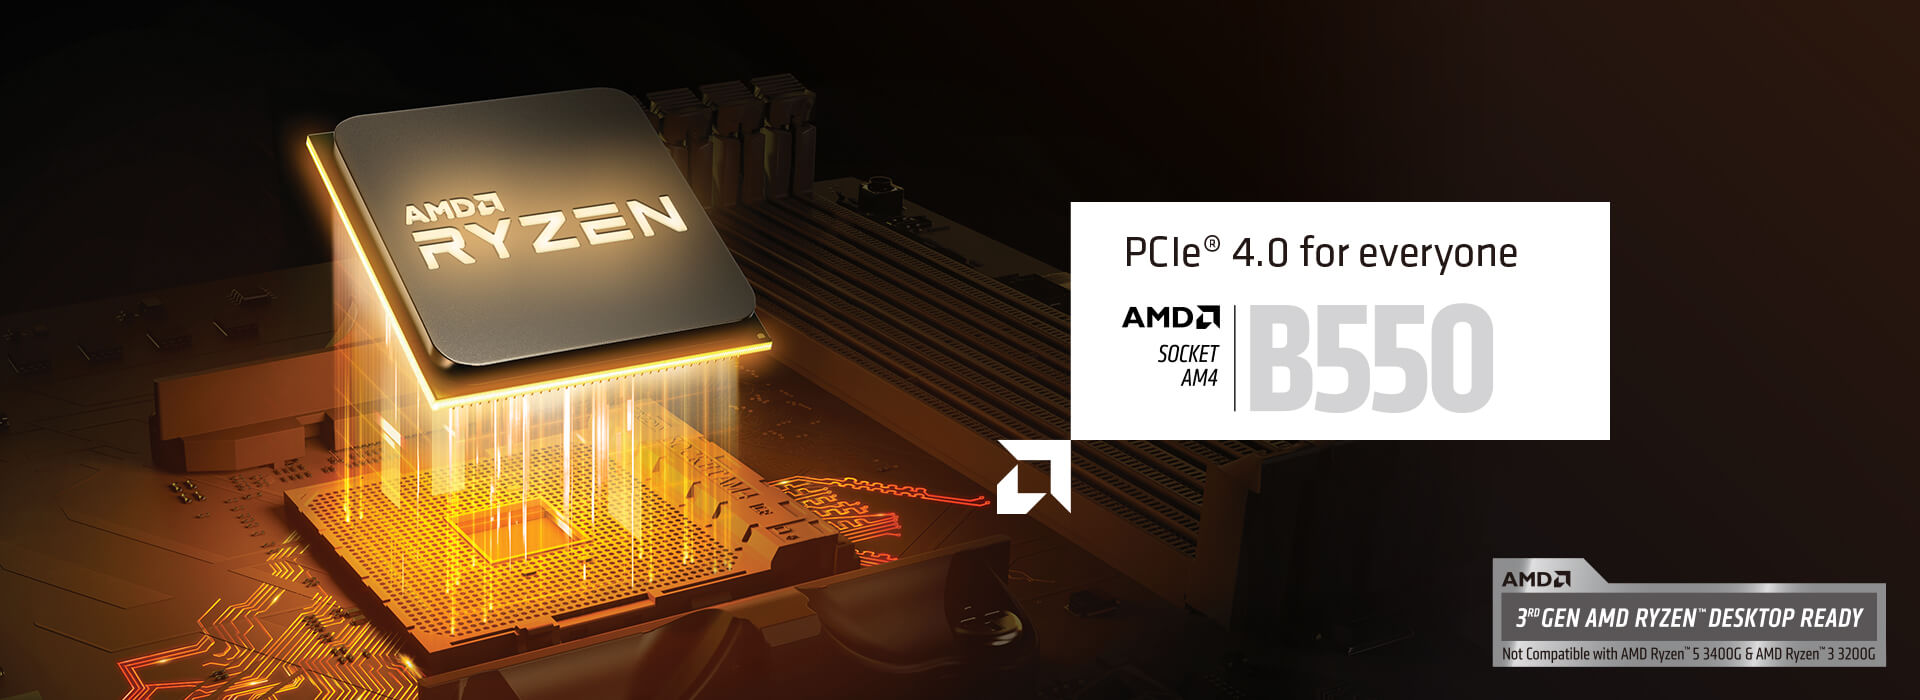 PCIe 4.0 para todos. SOCKET AMD AM4 B550. Preparada para a 3ª Geração de Processadores AMD RYZEN DESKTOP. Não compatível com AMD Ryzen 5 3400G & AMD Ryzen 3 3200G.